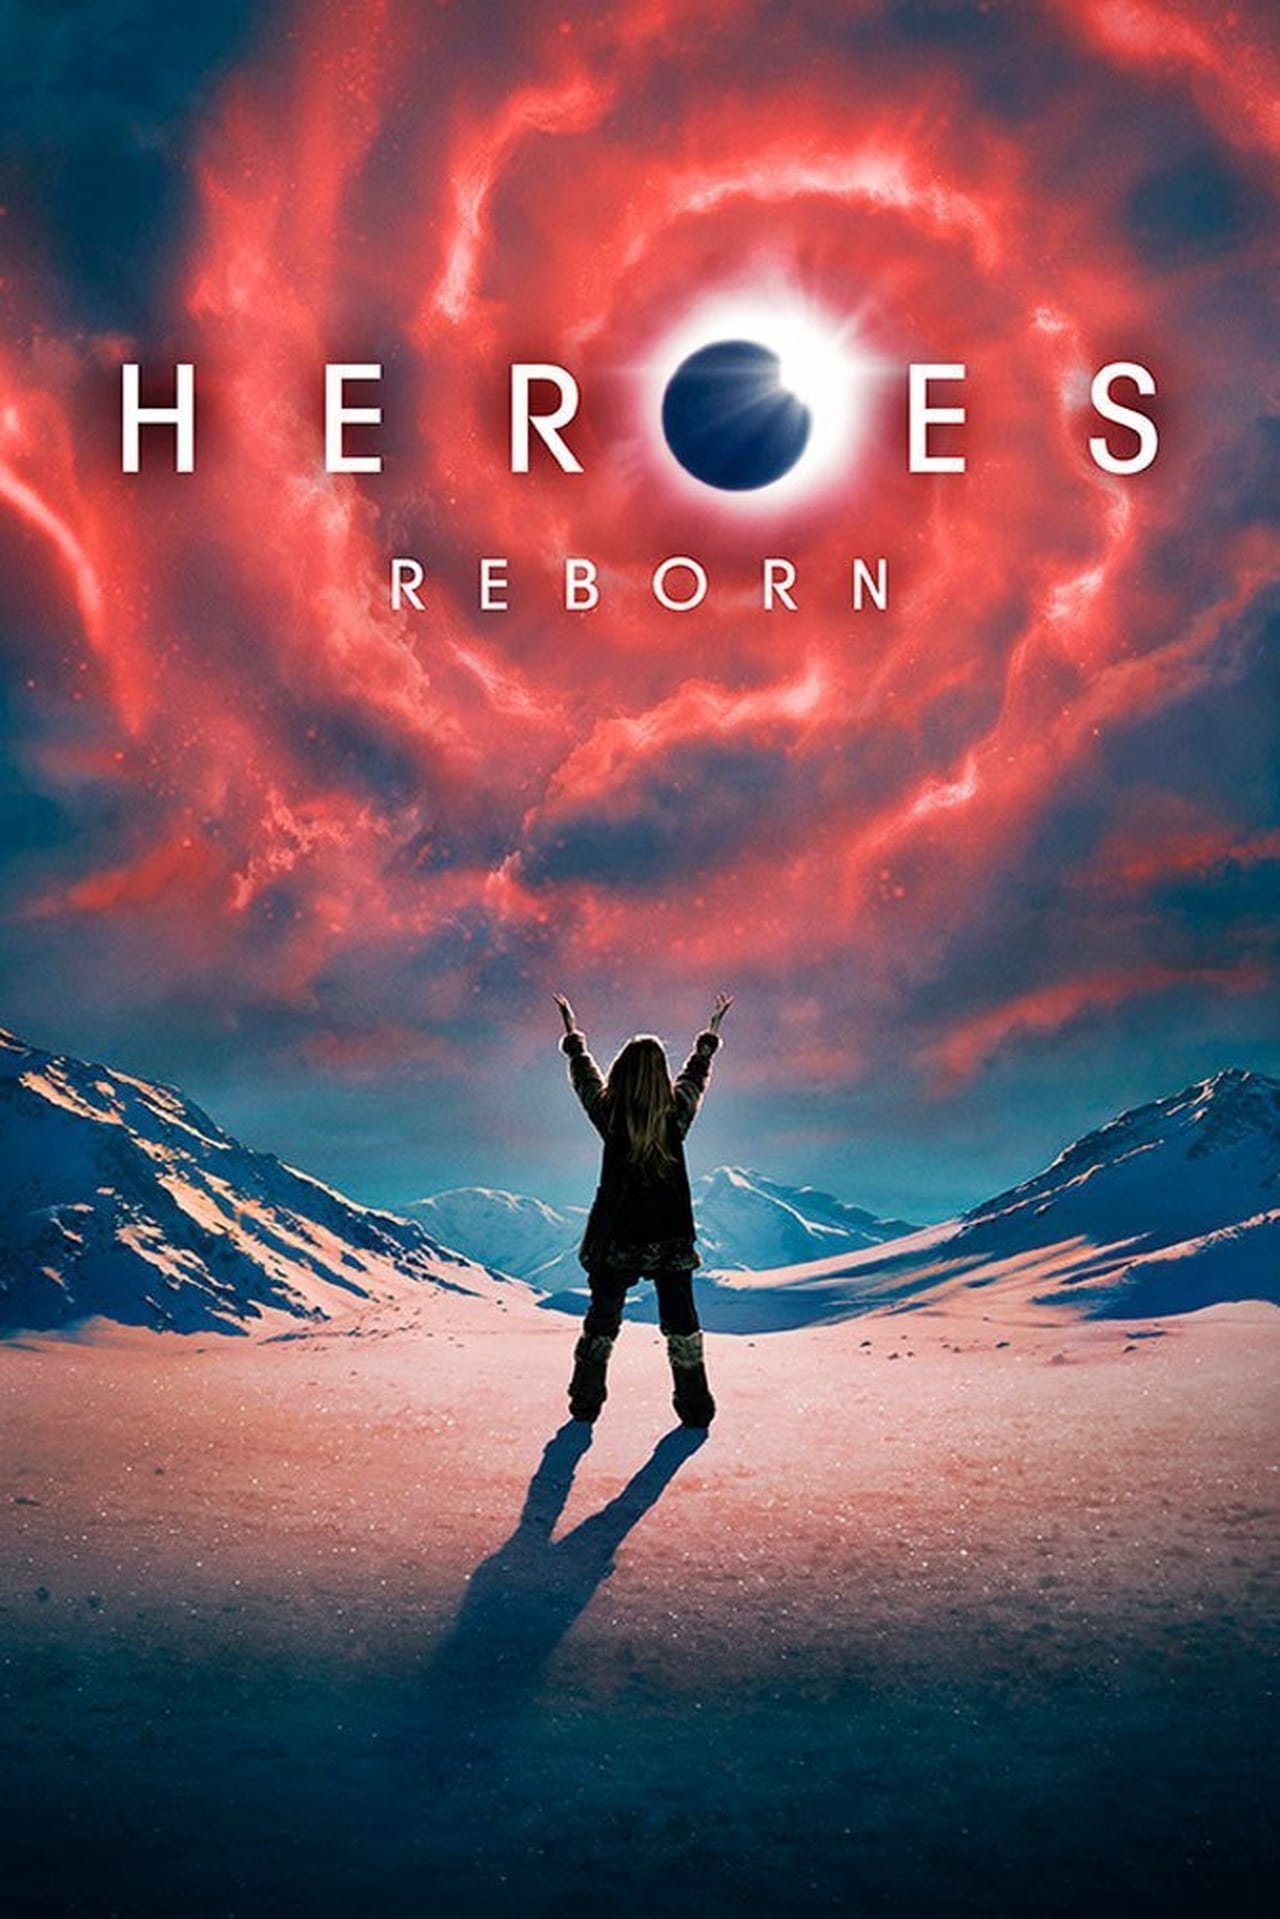 Heroes Reborn Season 1